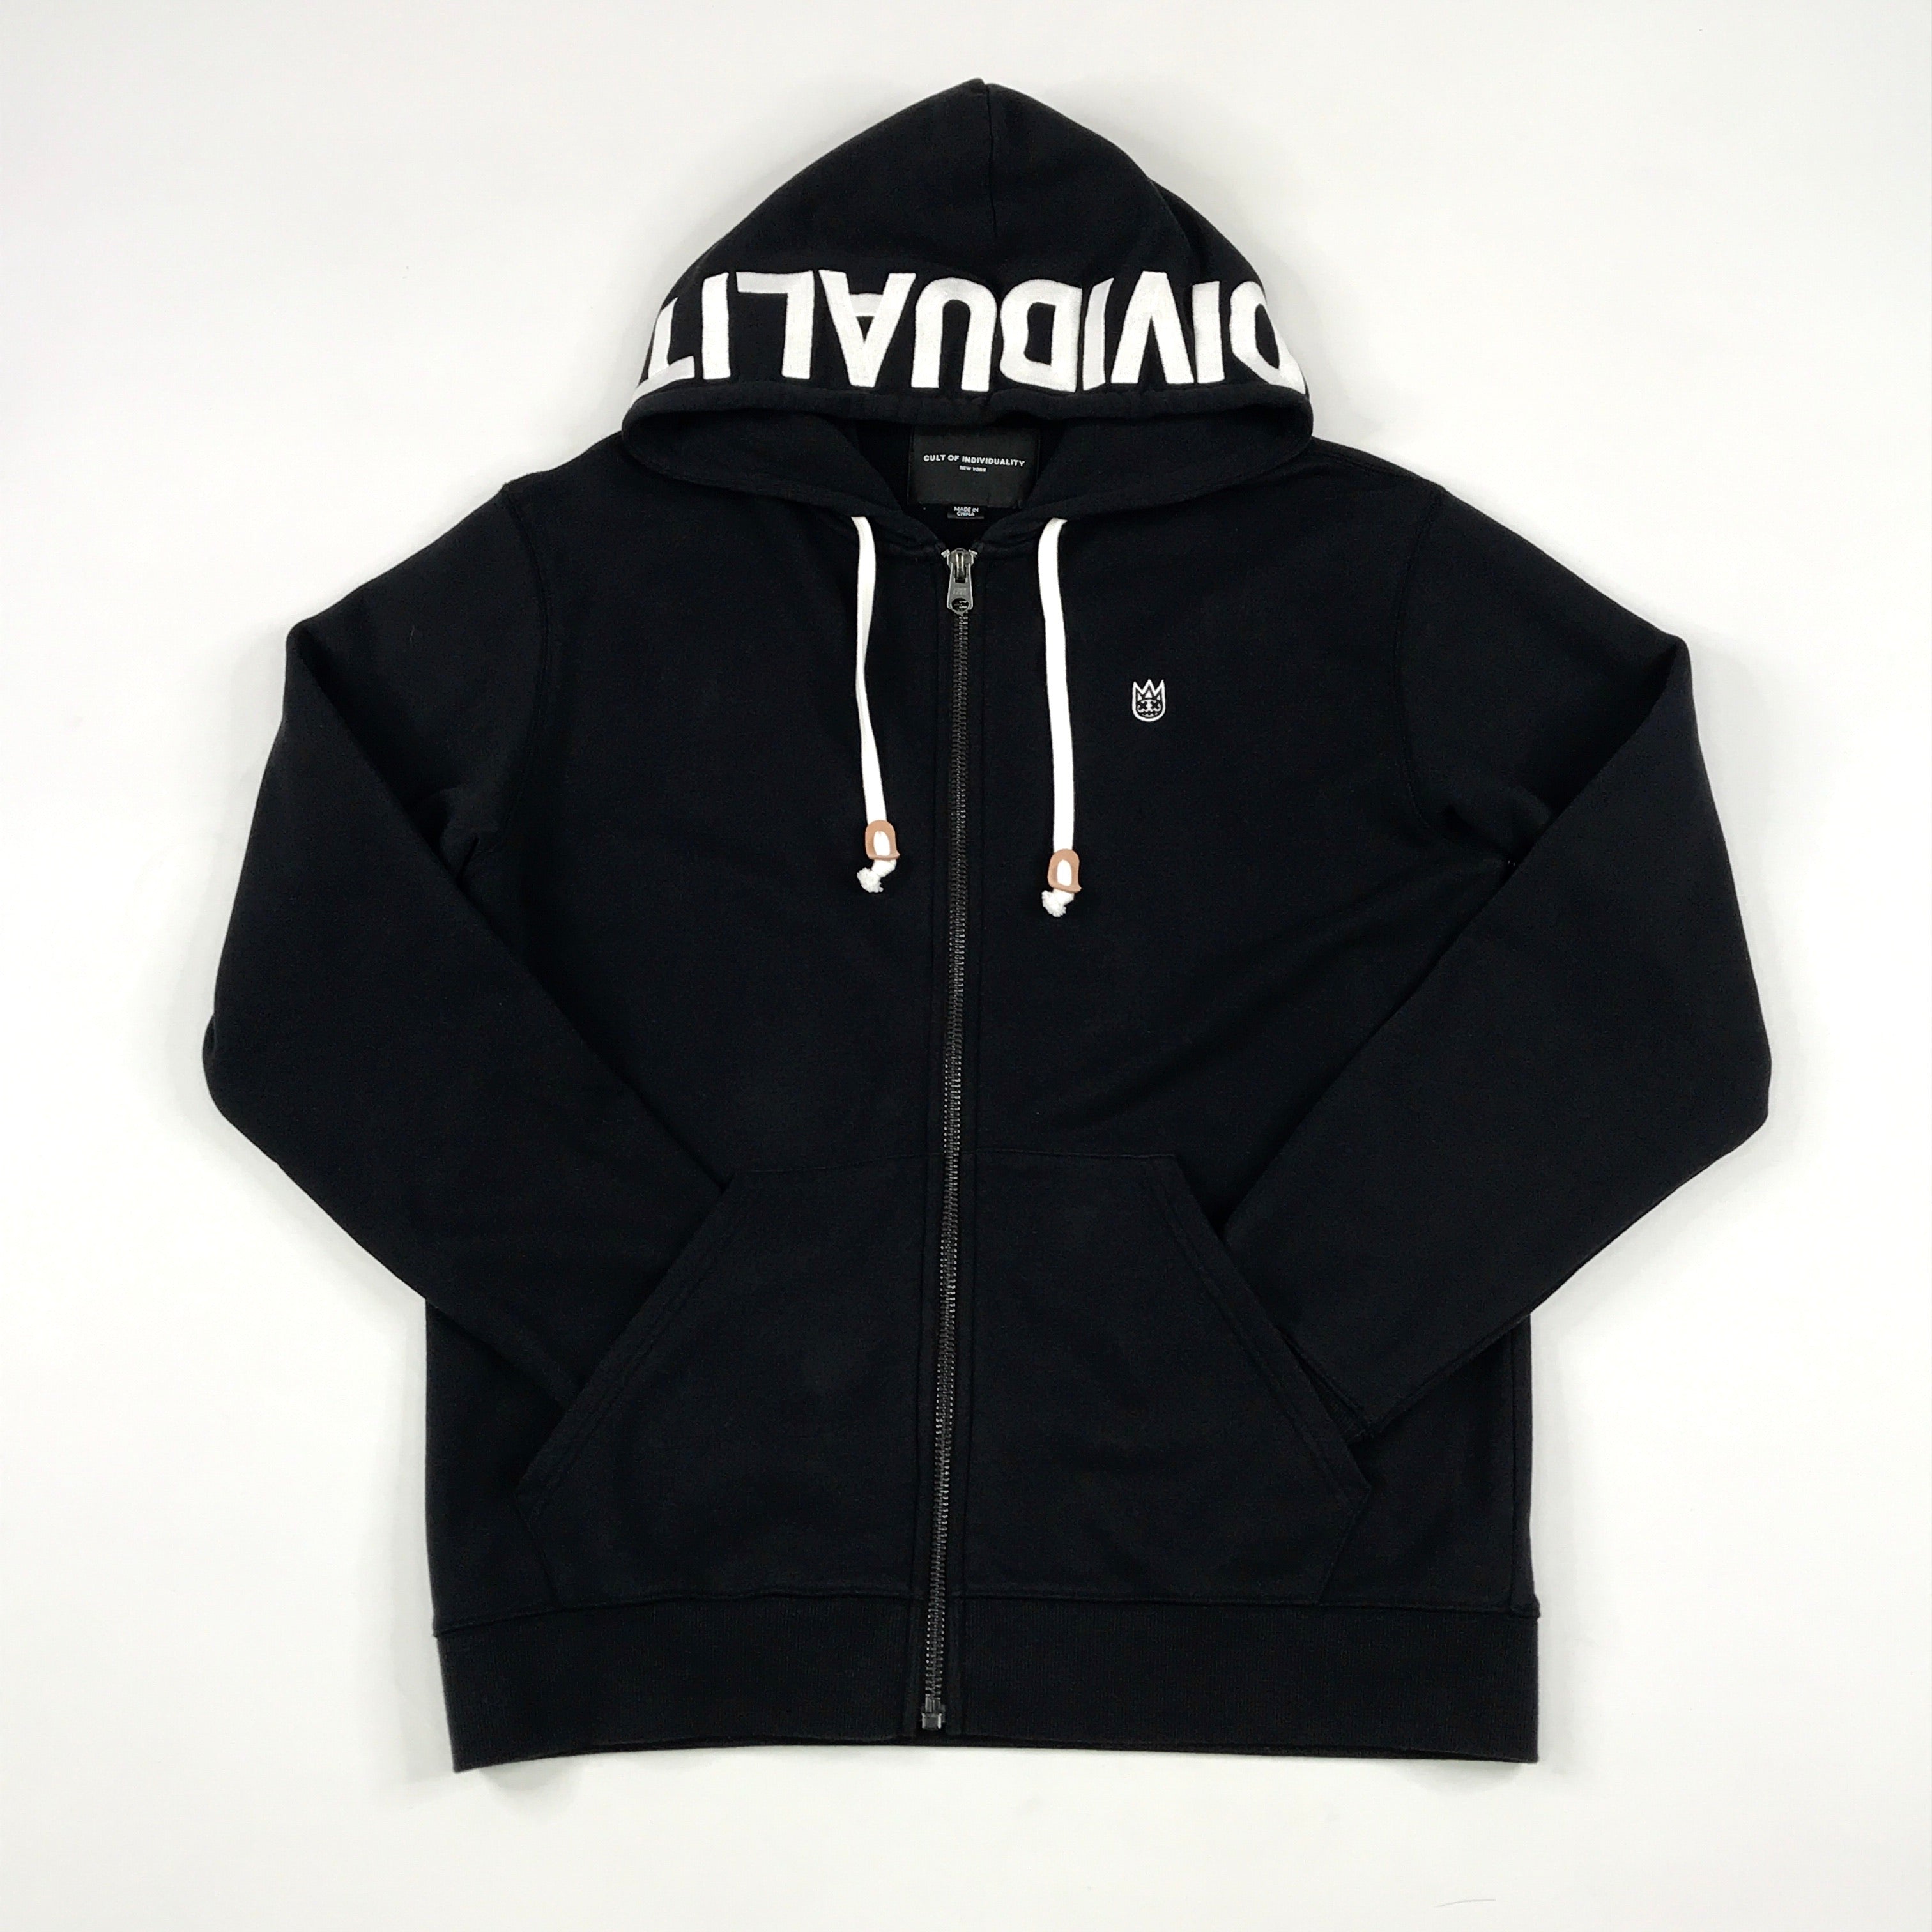 Cult embroidered zip hoodie set in black